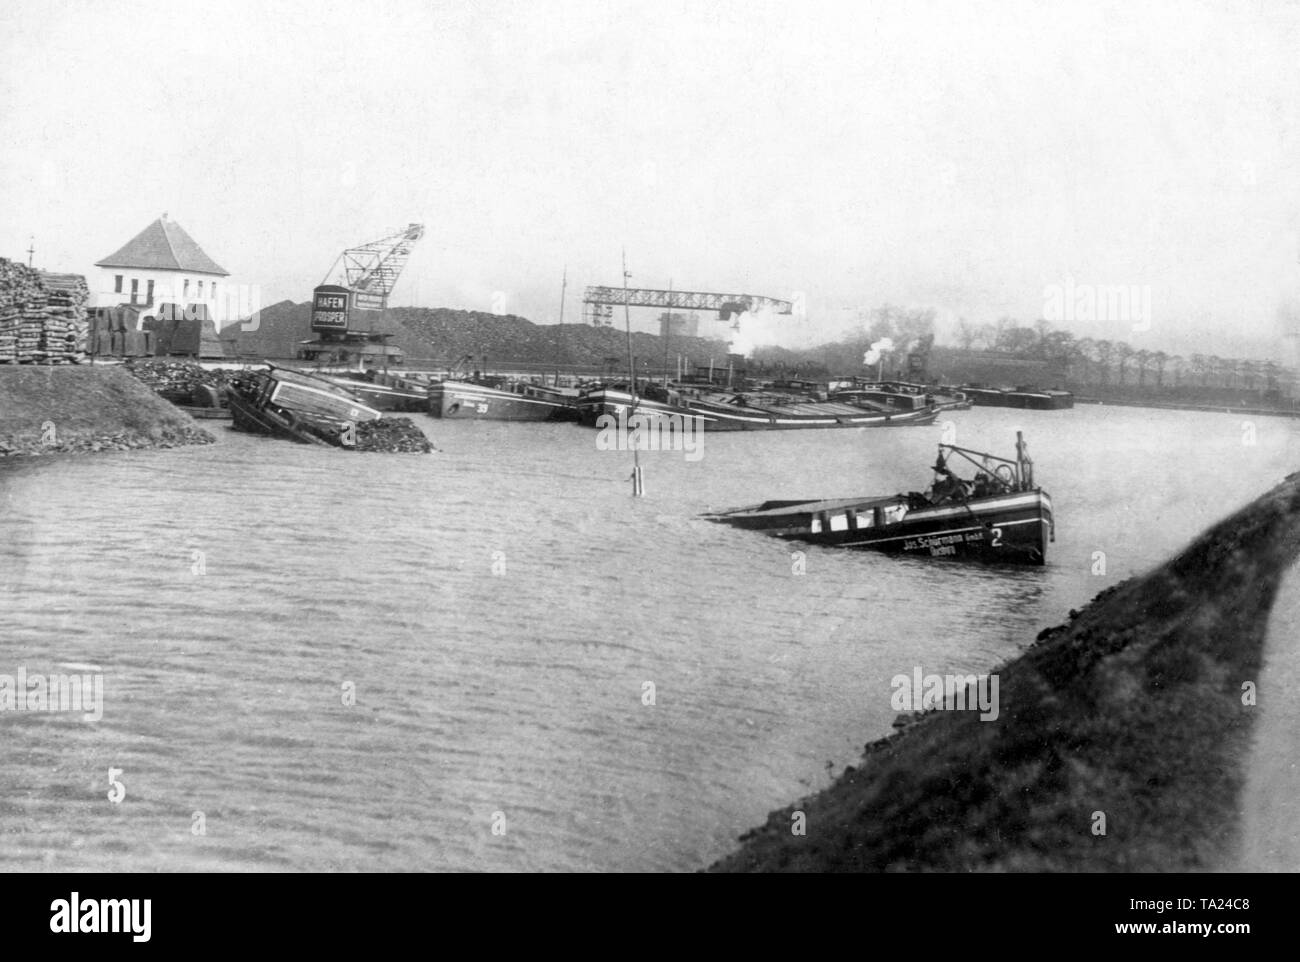 Al fine di ostacolare il carbone francese trasporti dalla regione della Ruhr, Tedesco combattenti della resistenza affondato una chiatta, bloccando il canale non datata (foto). Foto Stock